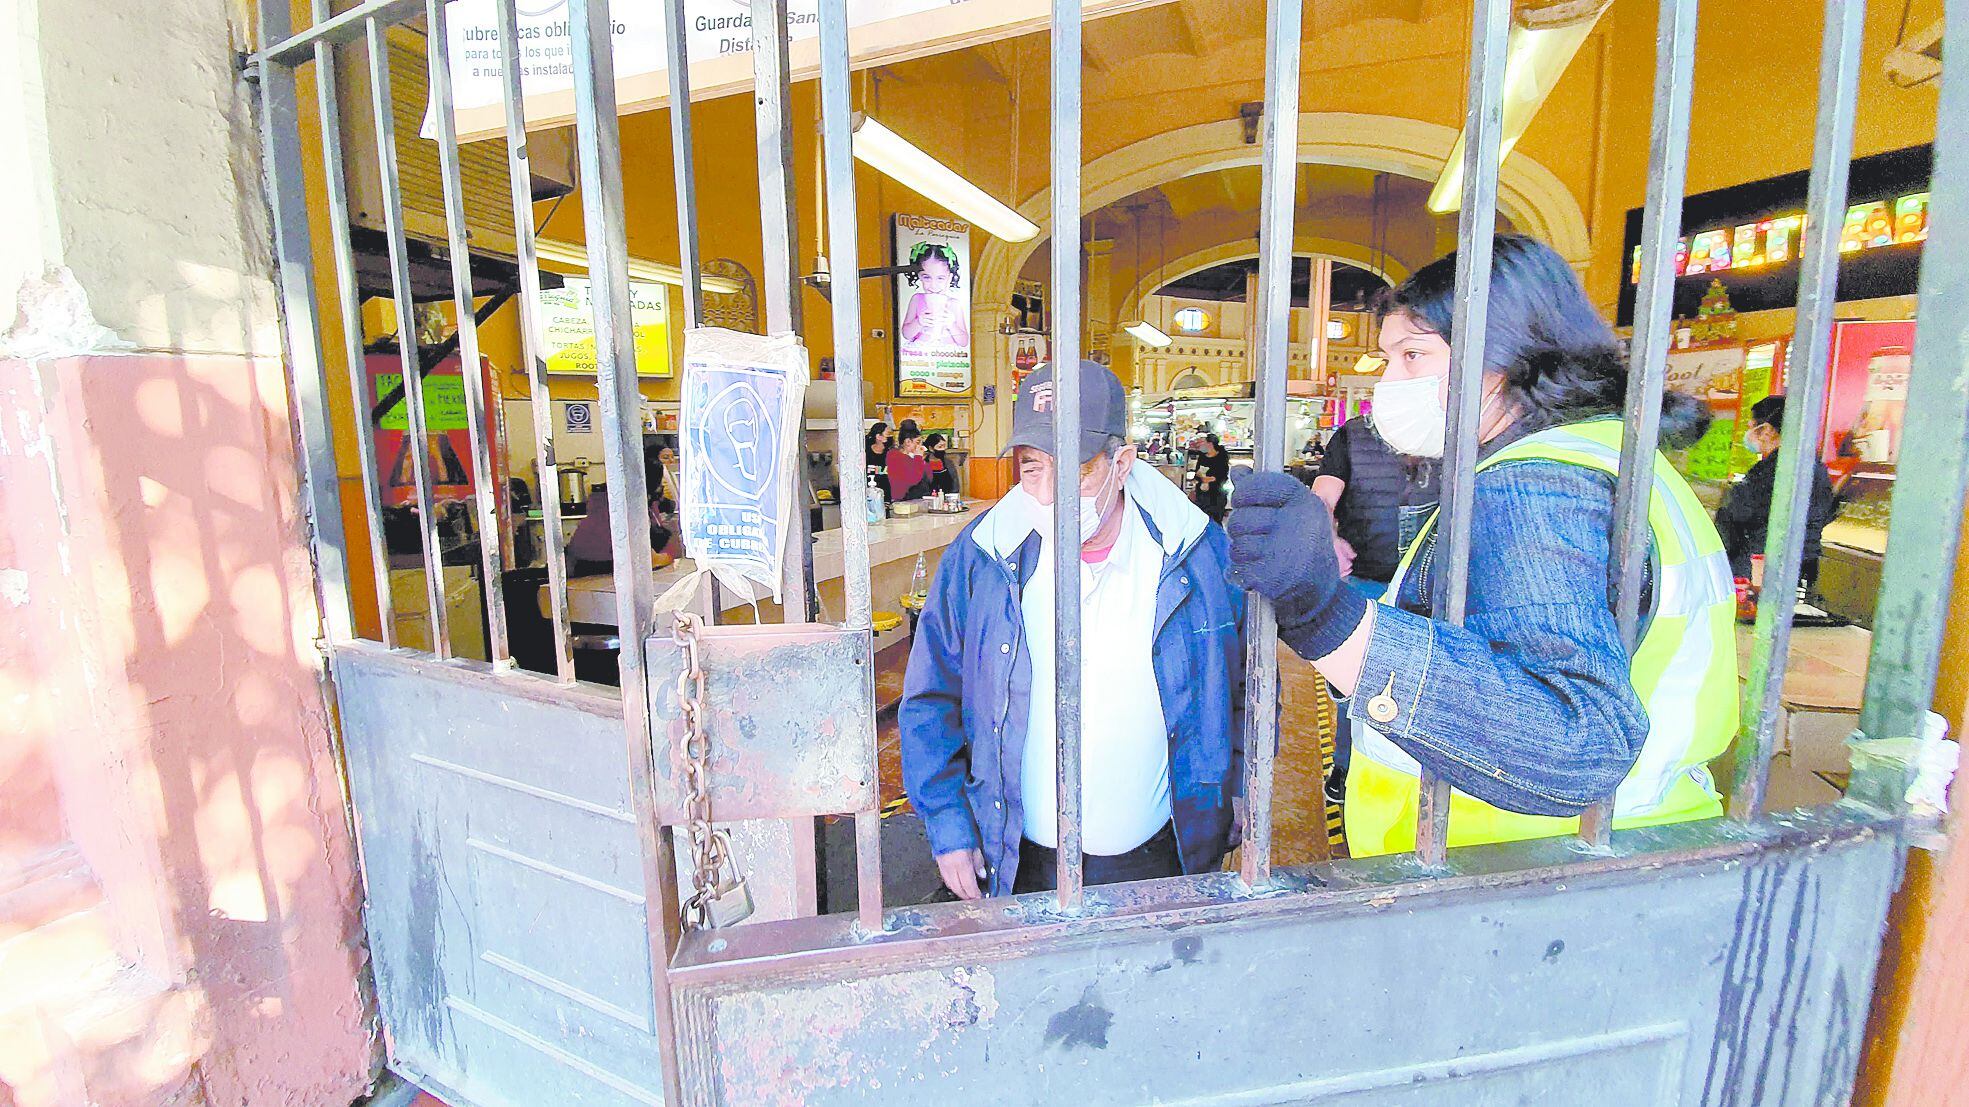 MÁS ESTRICTOS
En el Mercado Municipal endurecieron las medidas sanitarias y el control de accesos. 